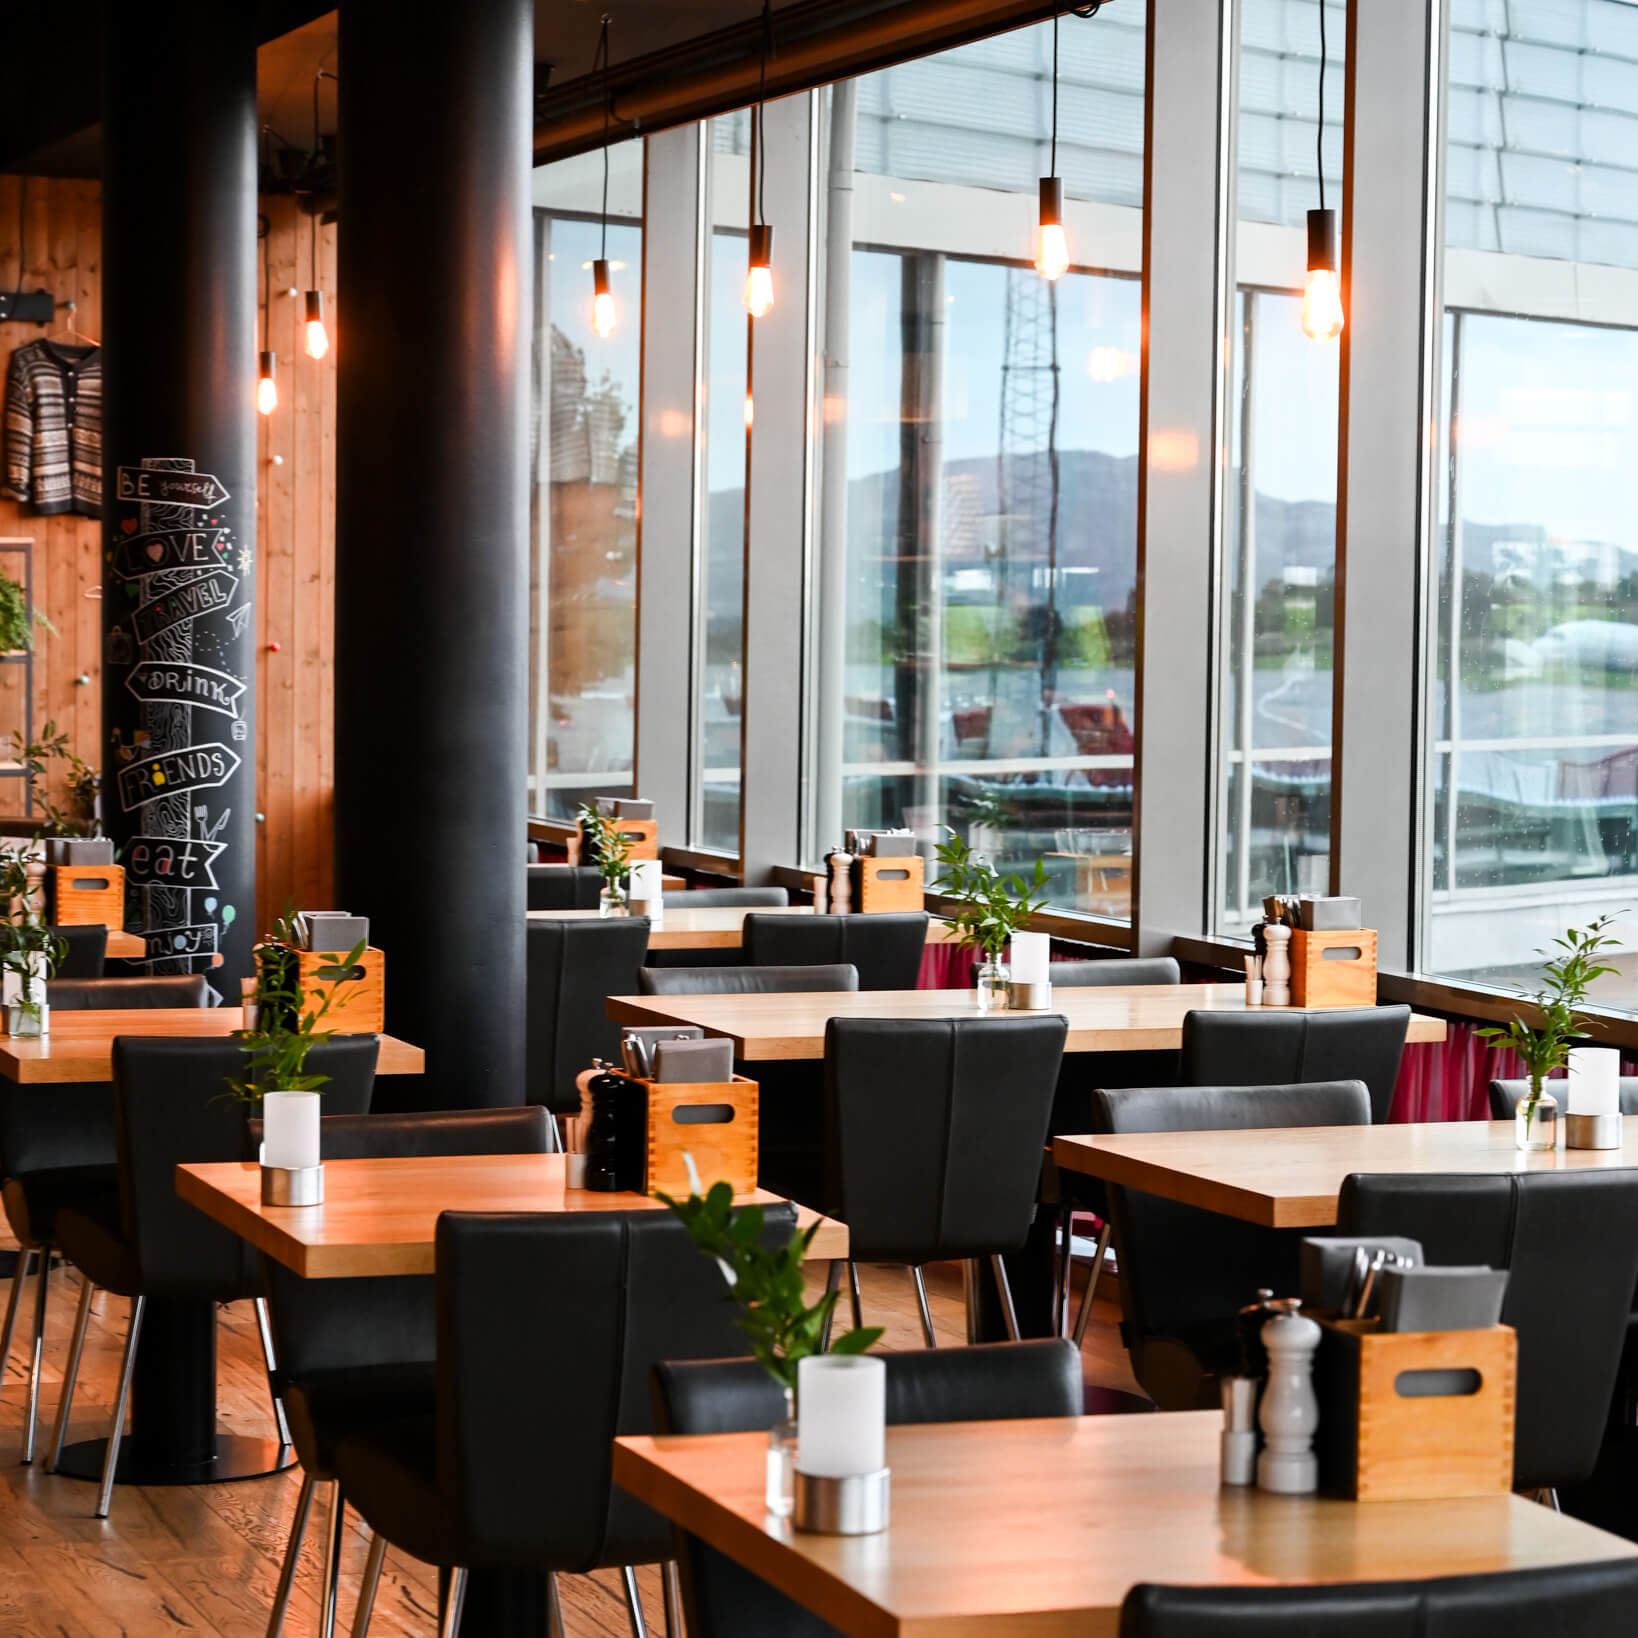 En moderne restaurantinteriør med trebord, svarte stoler, pendellamper og store vinduer som gir naturlig lys.